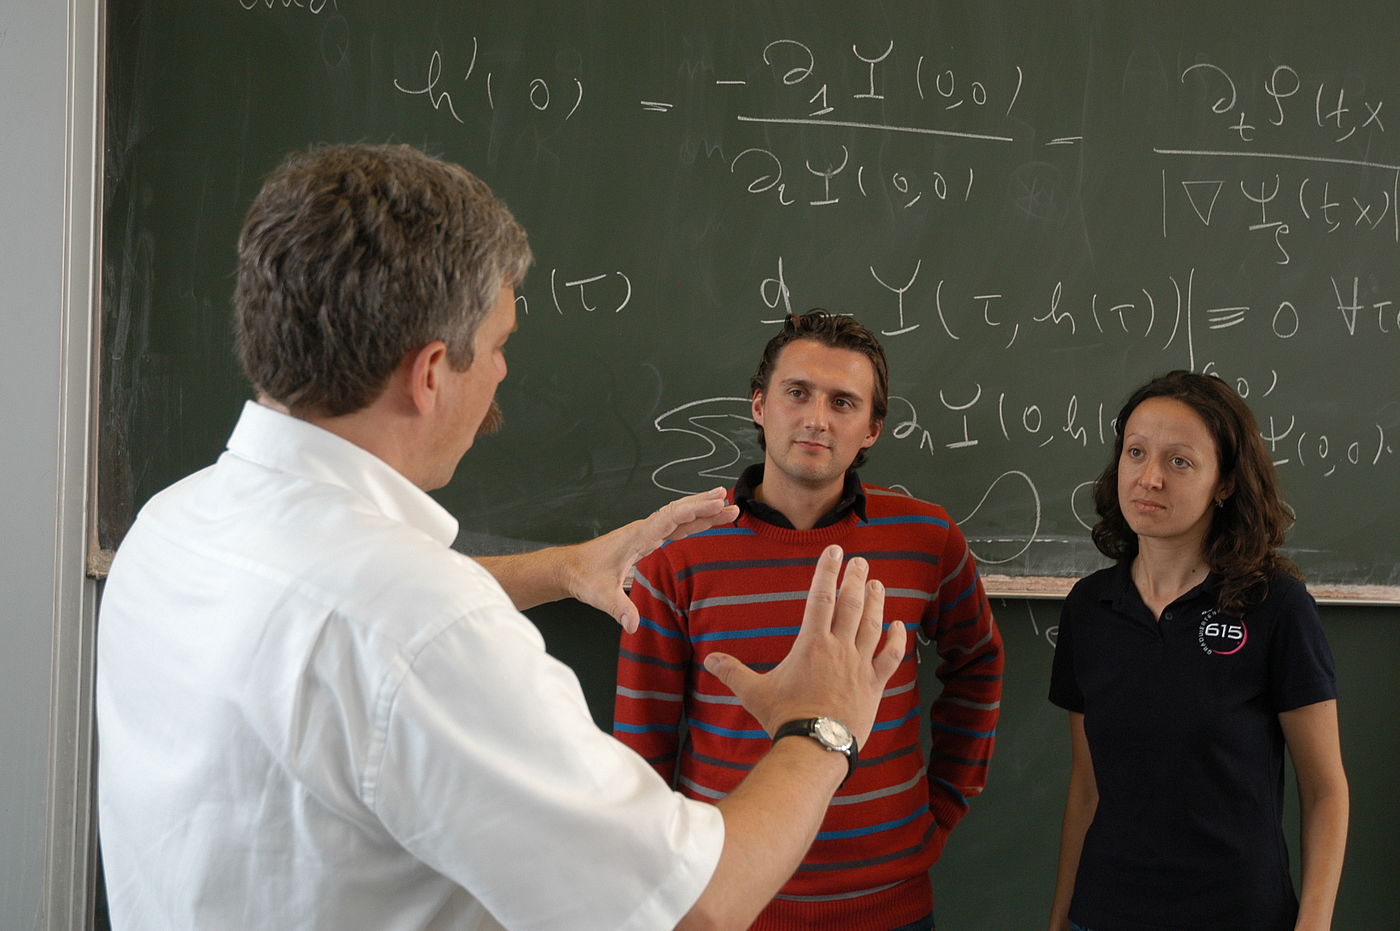 Ein Lehrender erklärt zwei Studierenden etwas vor einer Tafel voller mathematischer Gleichungen